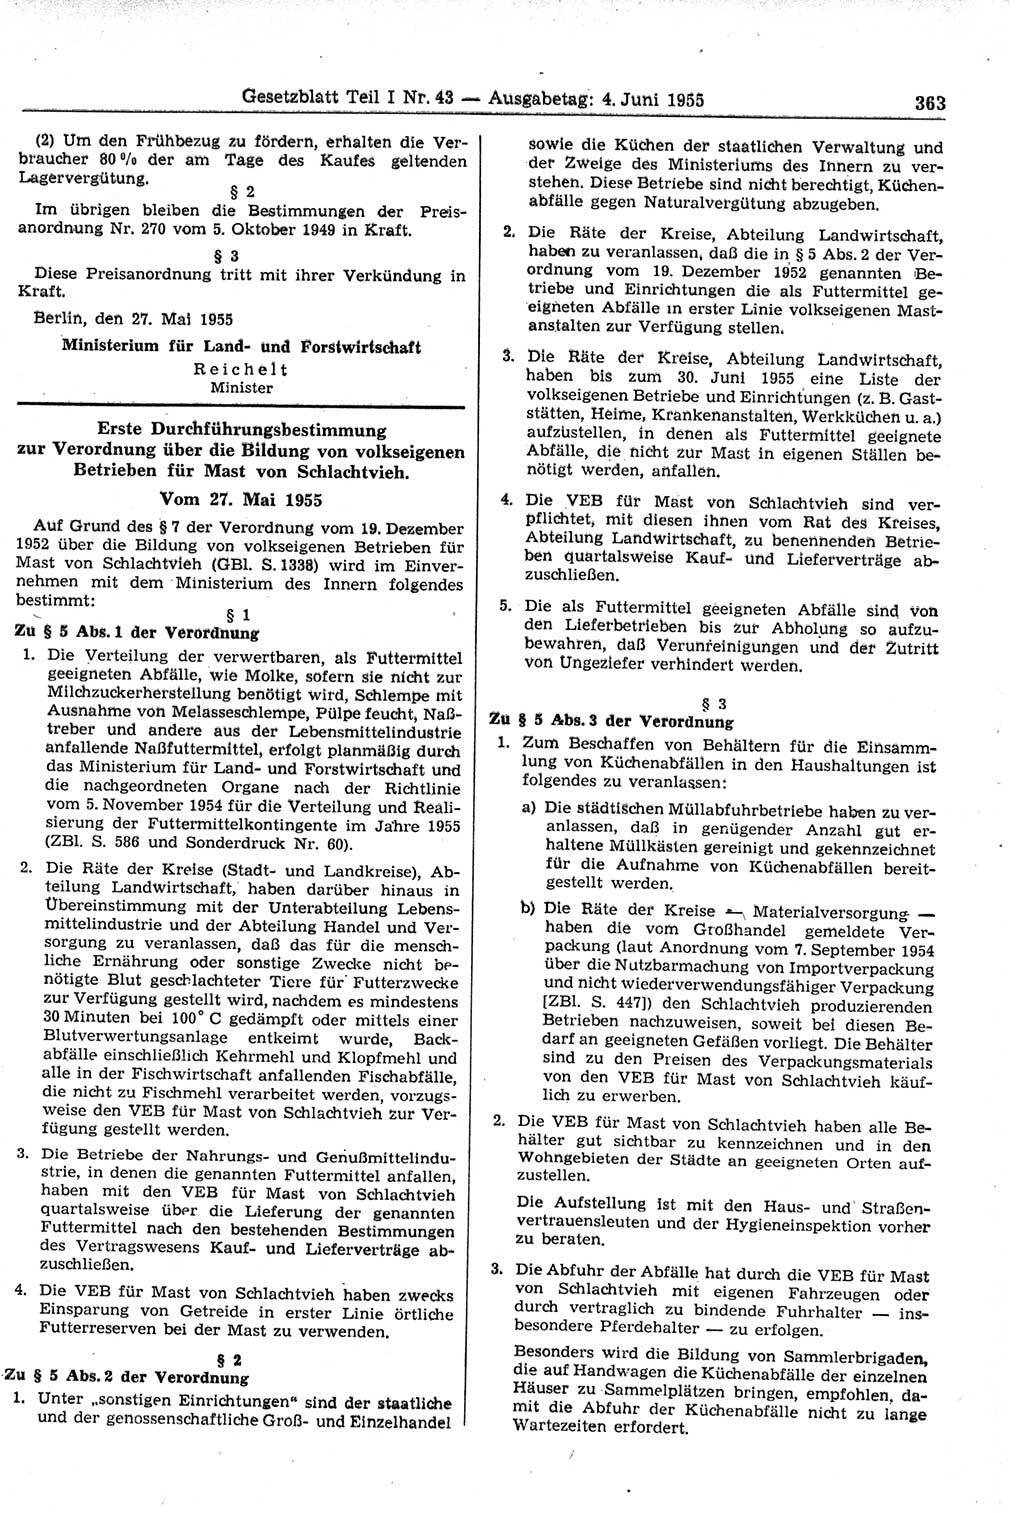 Gesetzblatt (GBl.) der Deutschen Demokratischen Republik (DDR) Teil Ⅰ 1955, Seite 363 (GBl. DDR Ⅰ 1955, S. 363)